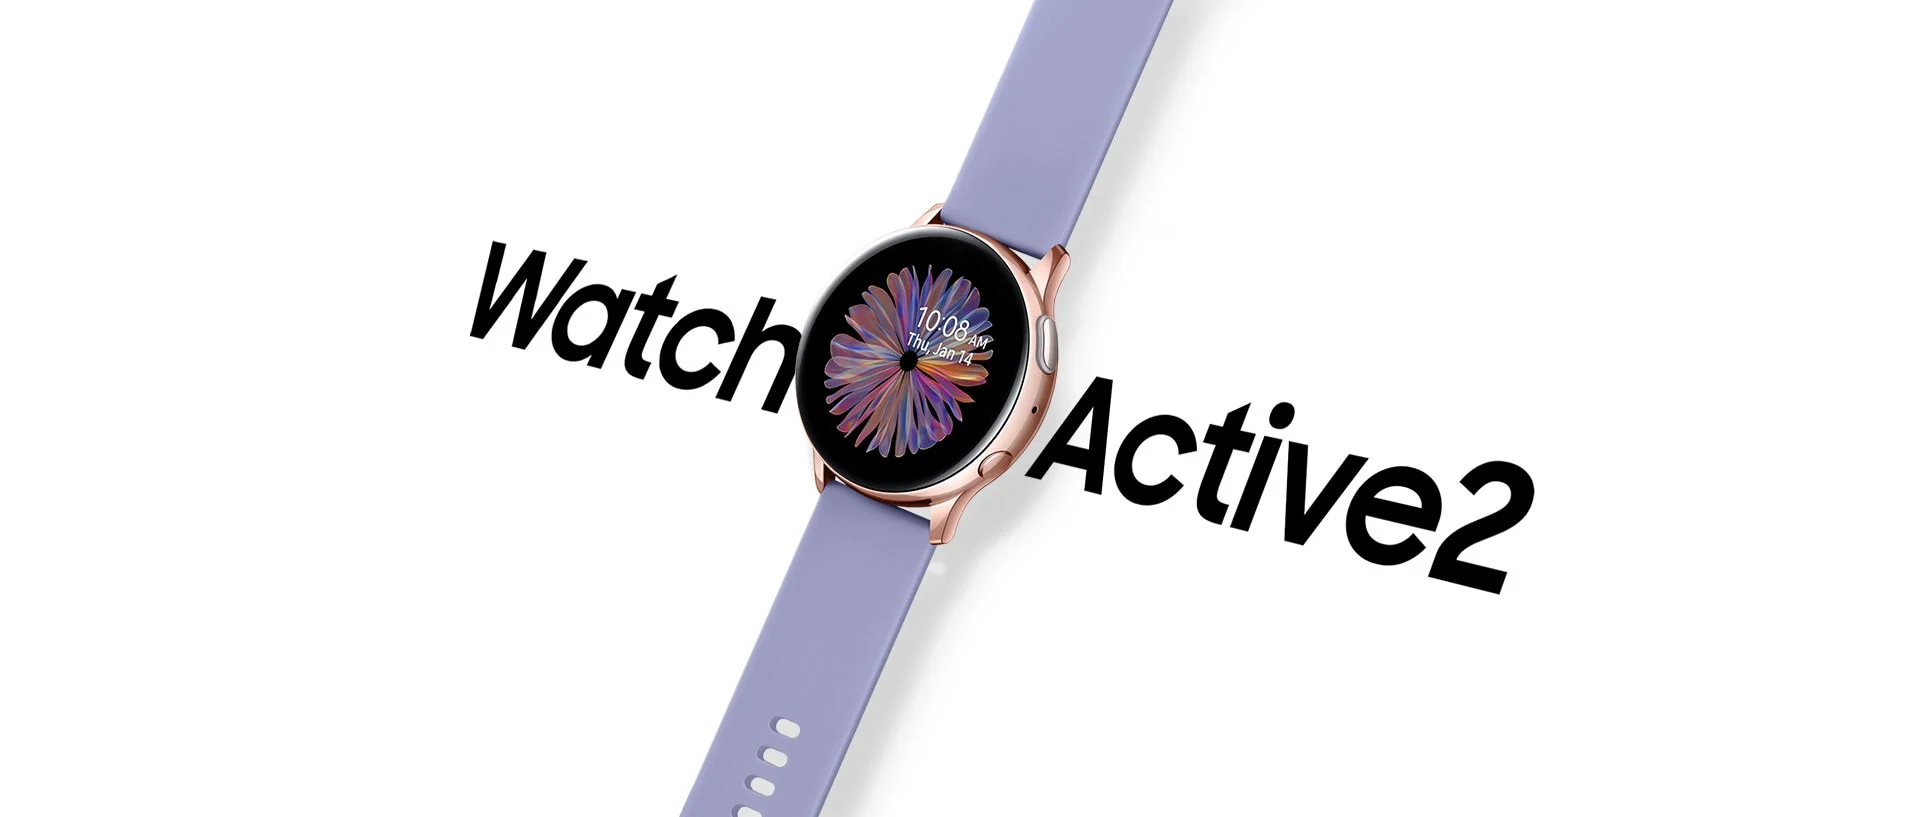 Samsung выпустила новую расцветку часов Galaxy Watch Active2 (samsung galaxy watch active2)